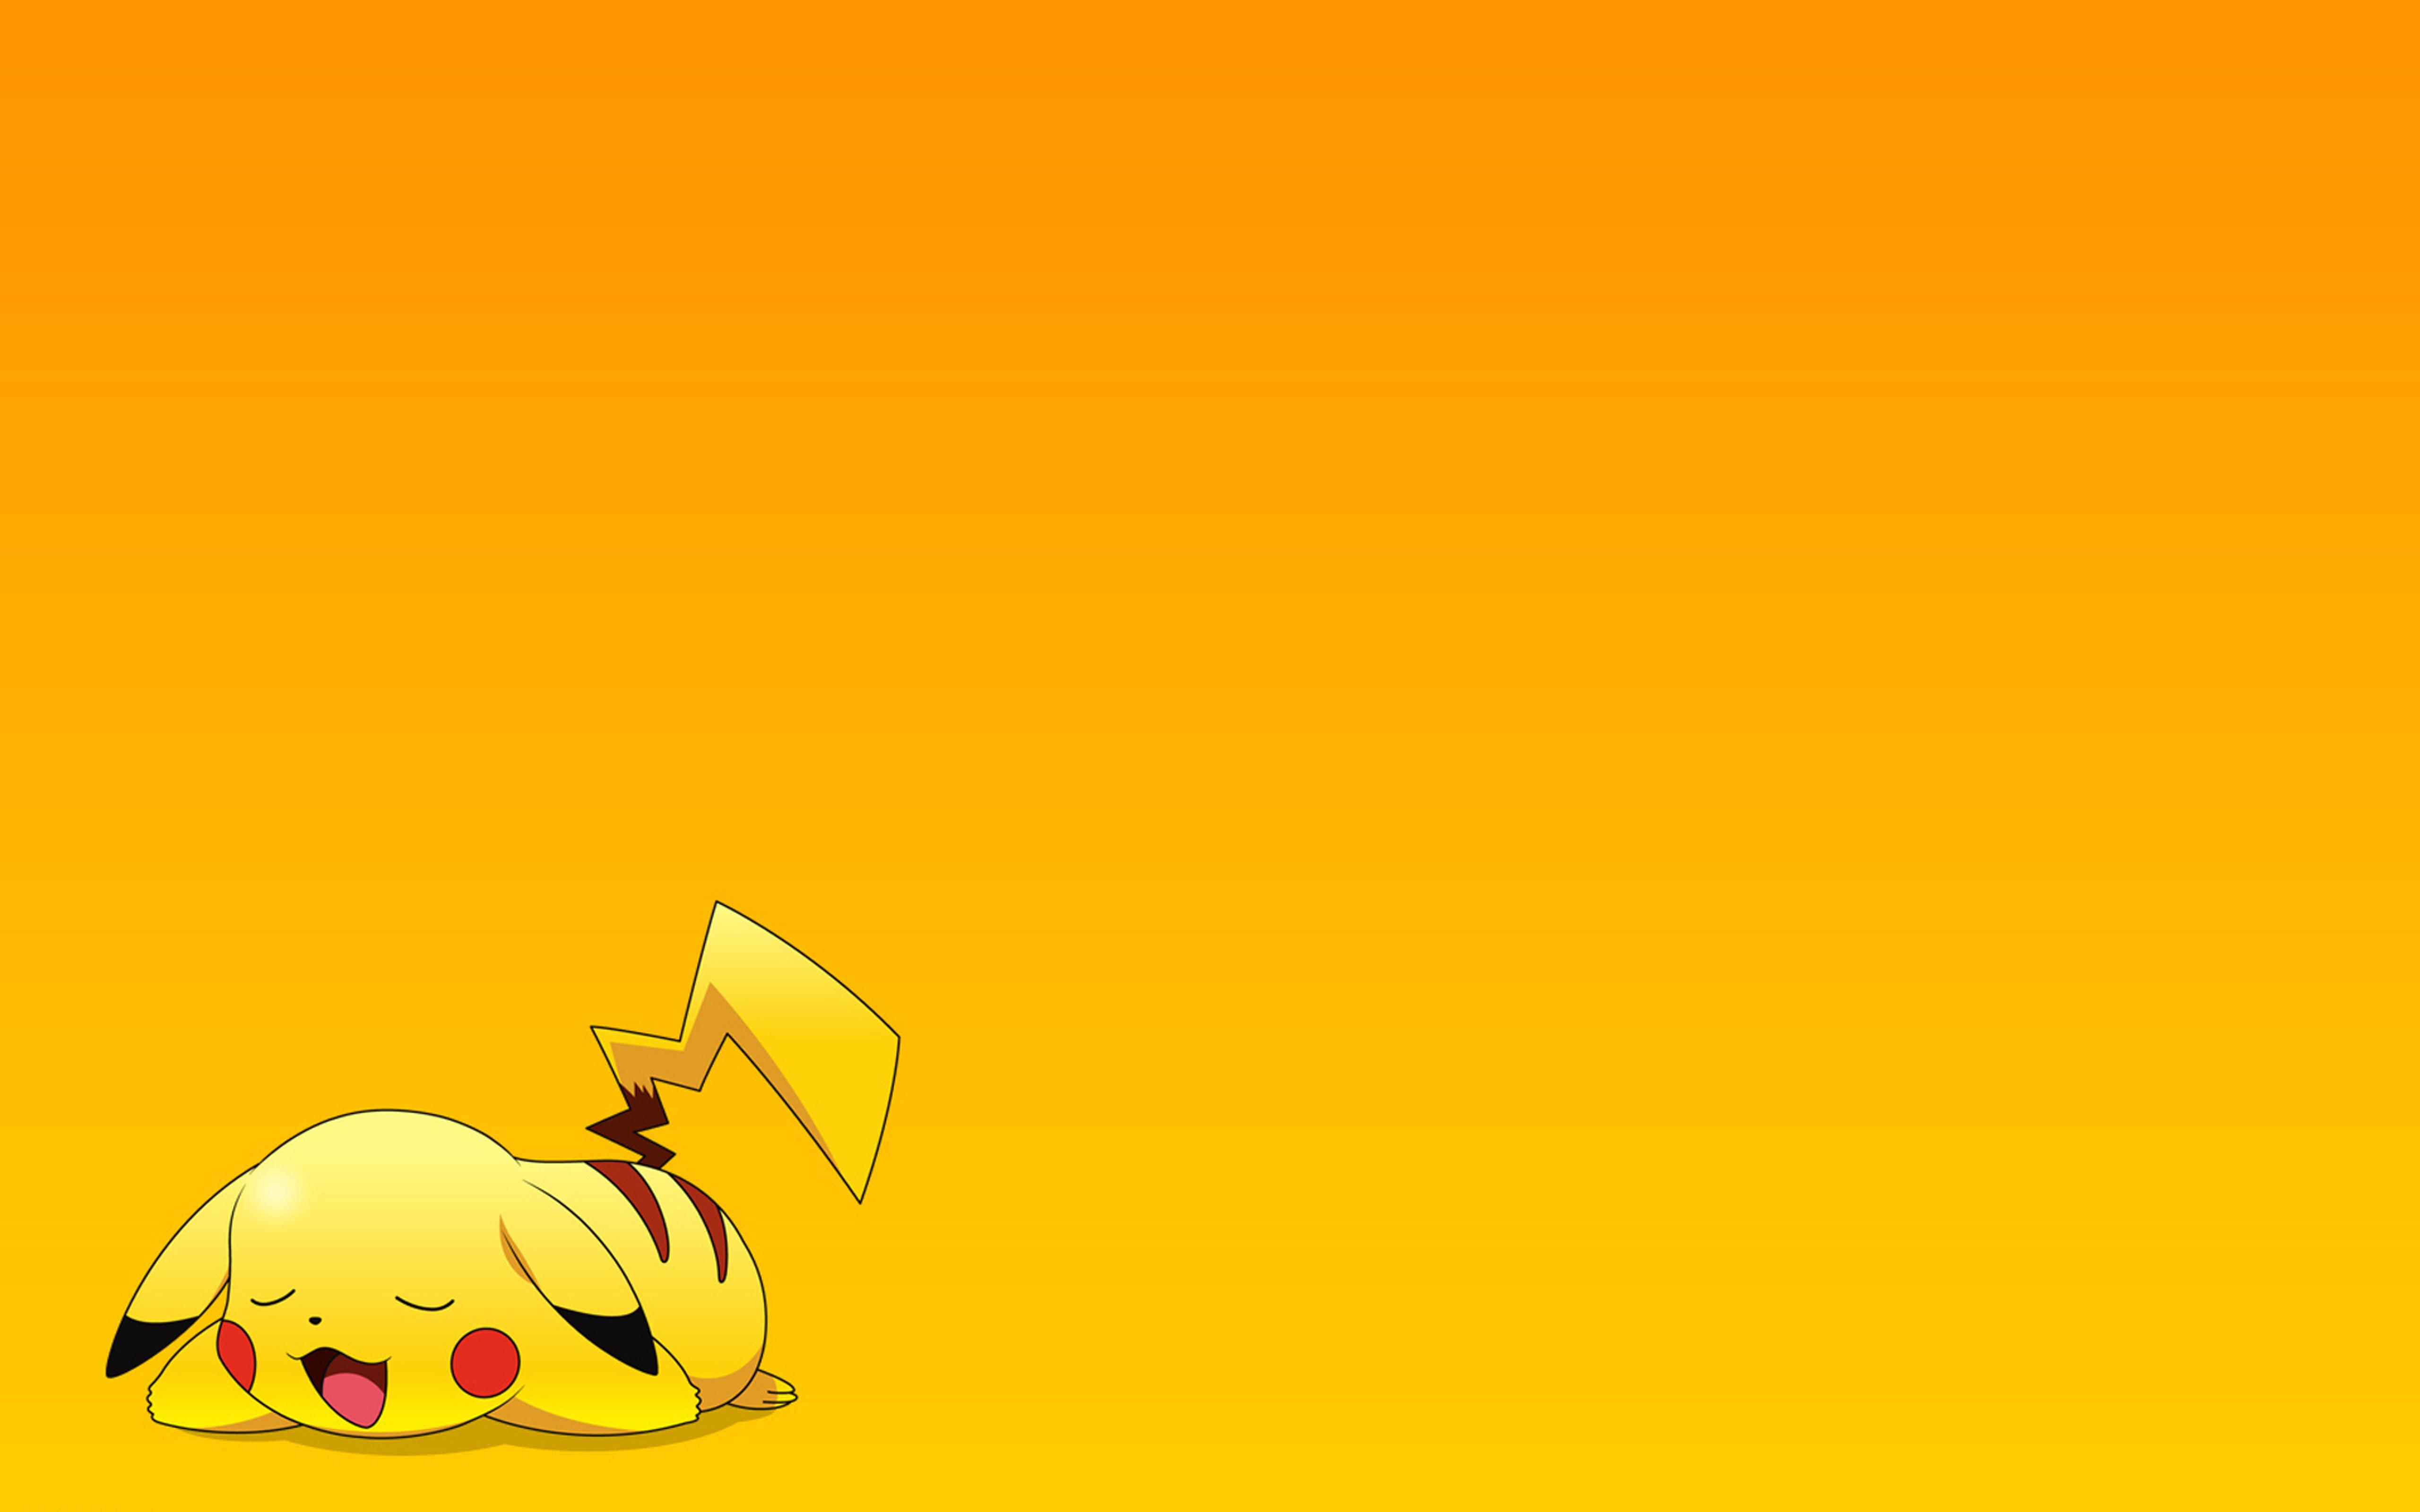 One yellow pokemon on the floor - Catch it!